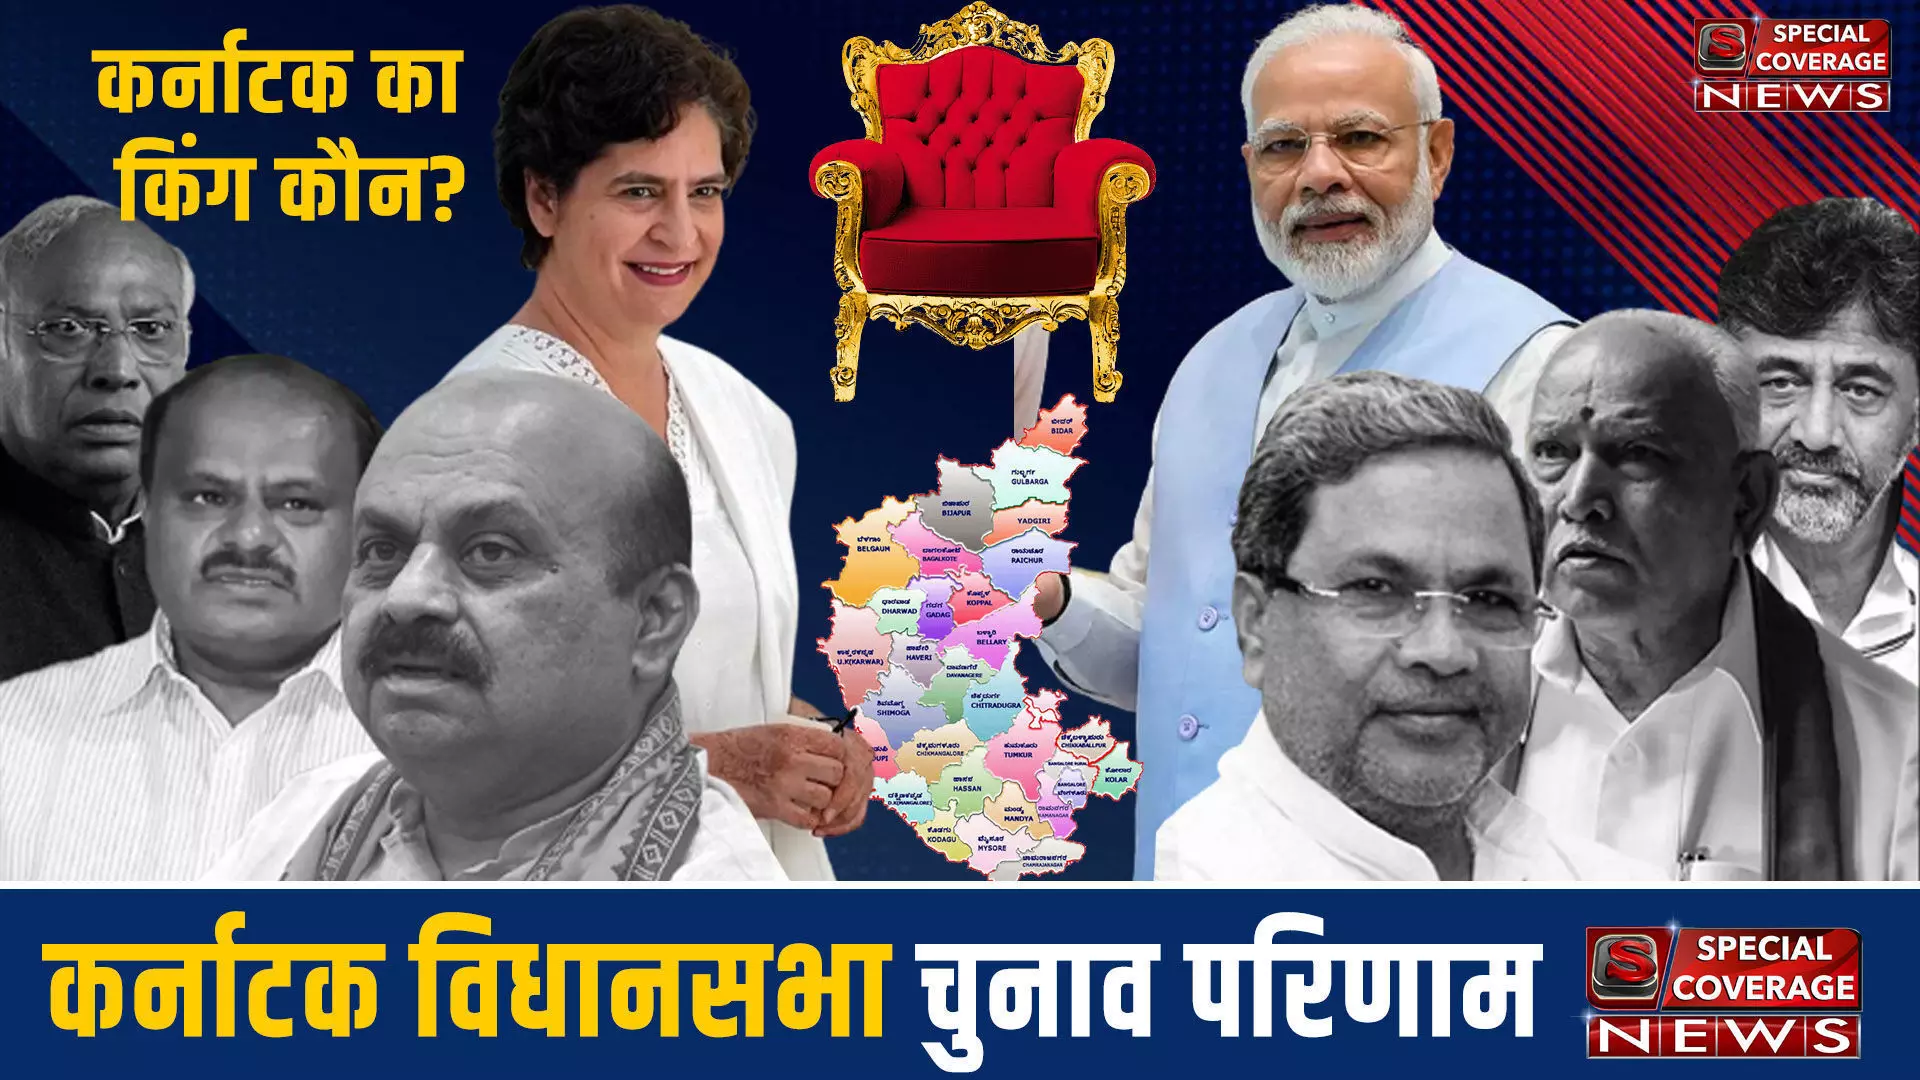 Karnataka Assembly Election 2023: कर्नाटक के कोप्पल जिले की विधानसभा सीट के चुनाव परिणाम 2023